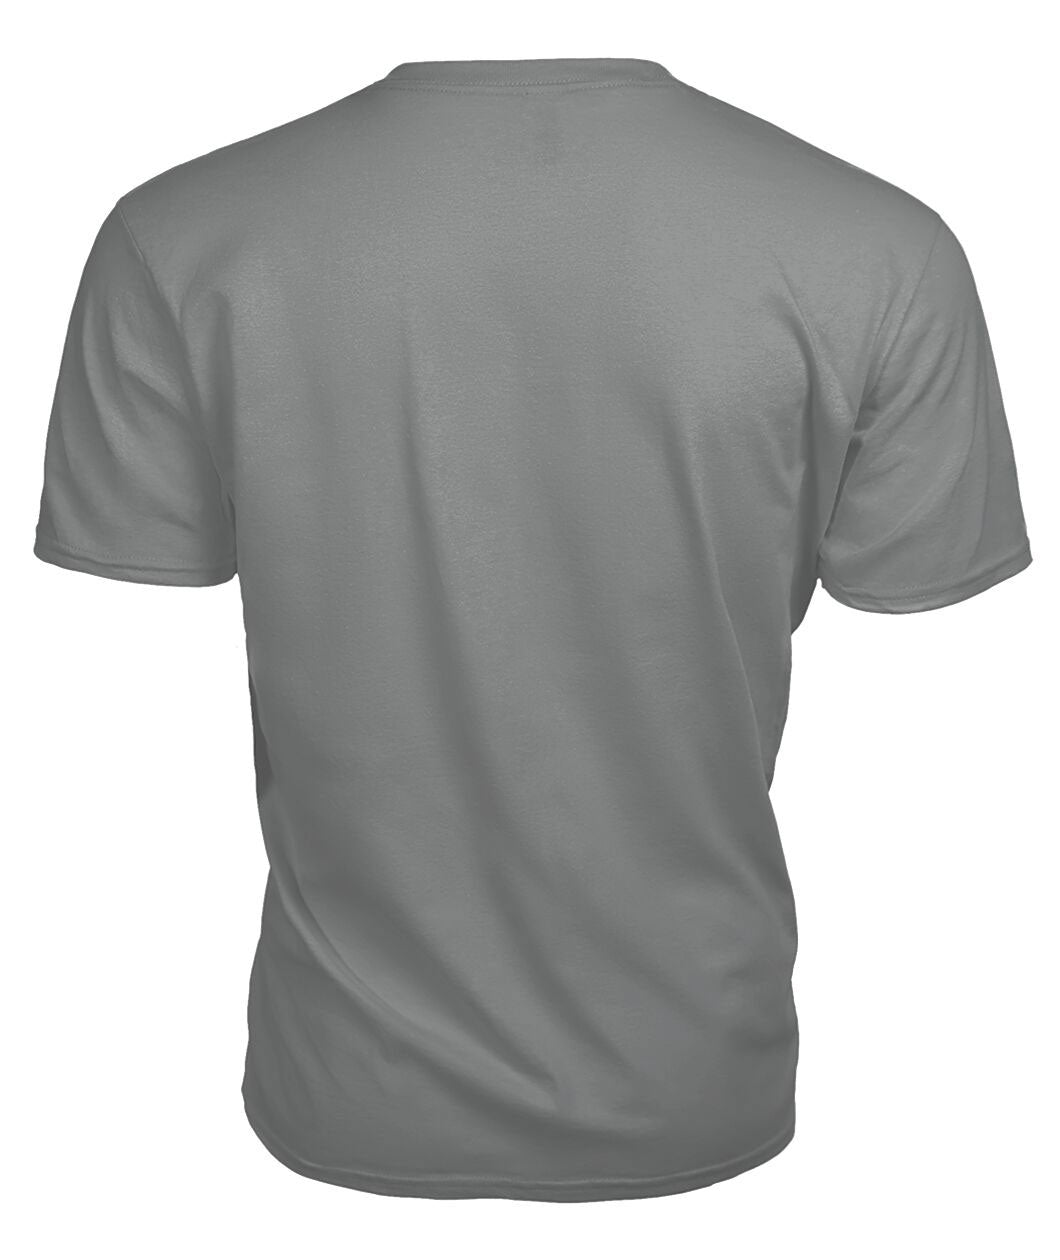 Leask Tartan Crest 2D T-shirt - Blood Runs Through My Veins Style